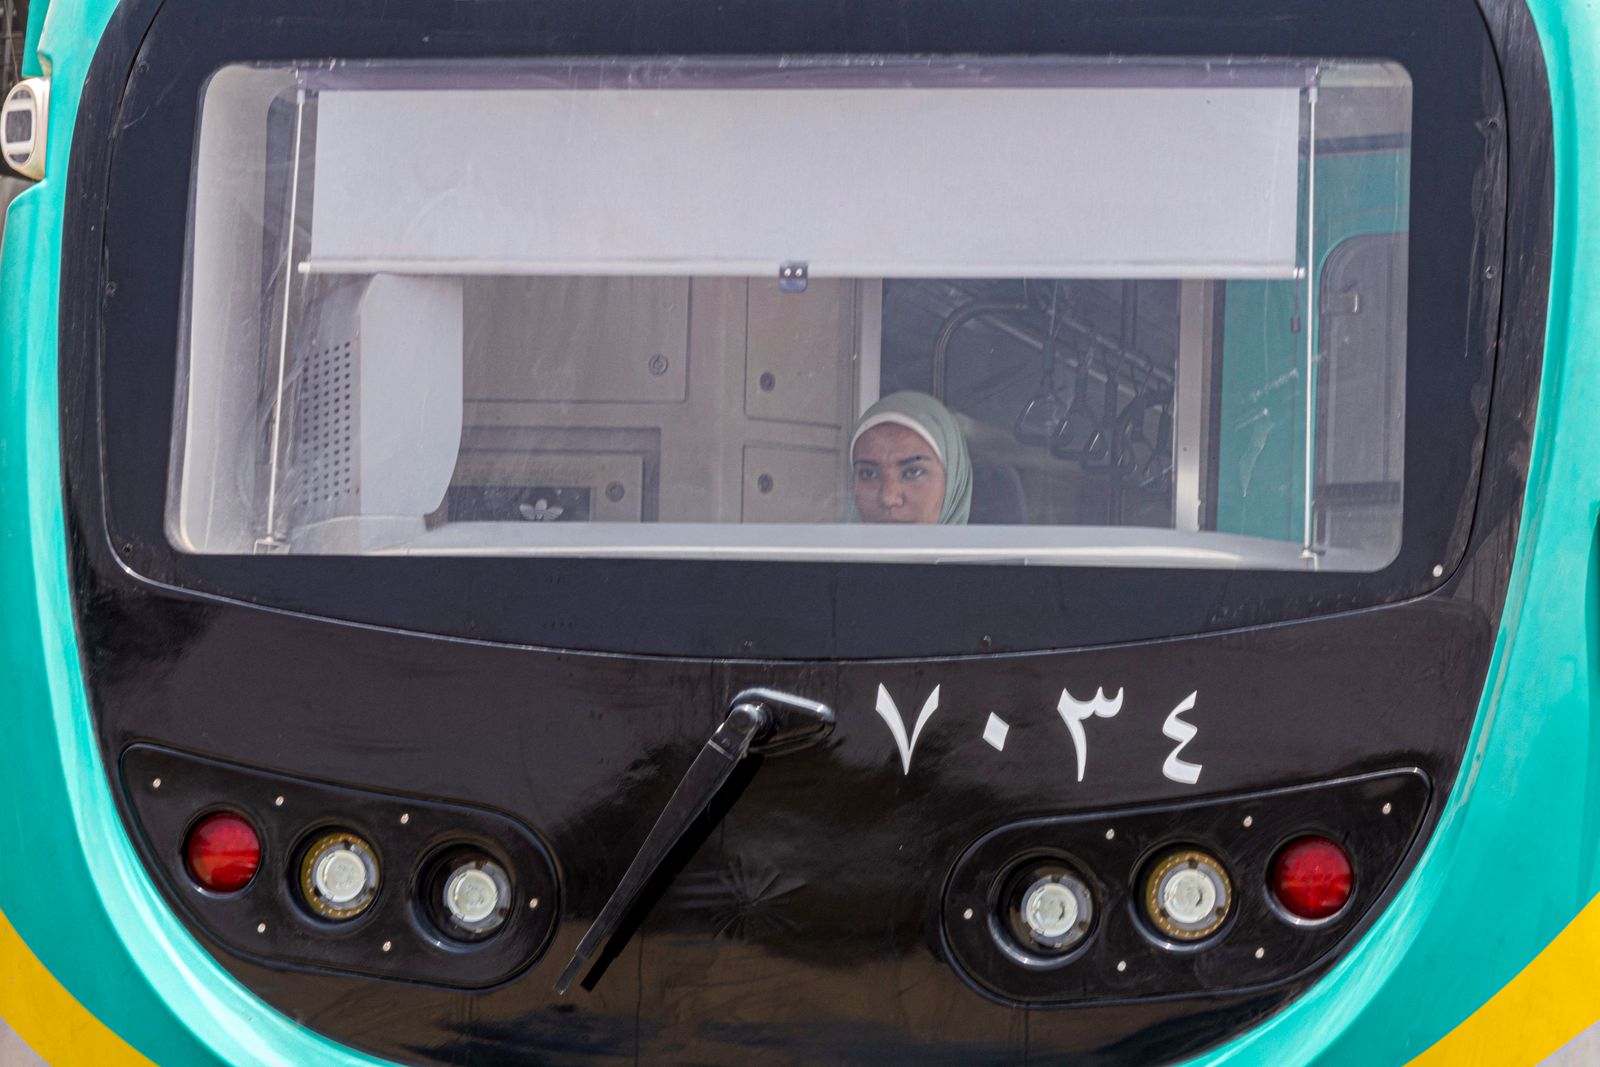 سوزان محمد تقود جهاز محاكاة قطار المترو بالحجم الطبيعي في محطة عدلي منصور في حي هليوبوليس شمال شرق القاهرة، مصر - 31 مايو 2022 - AFP